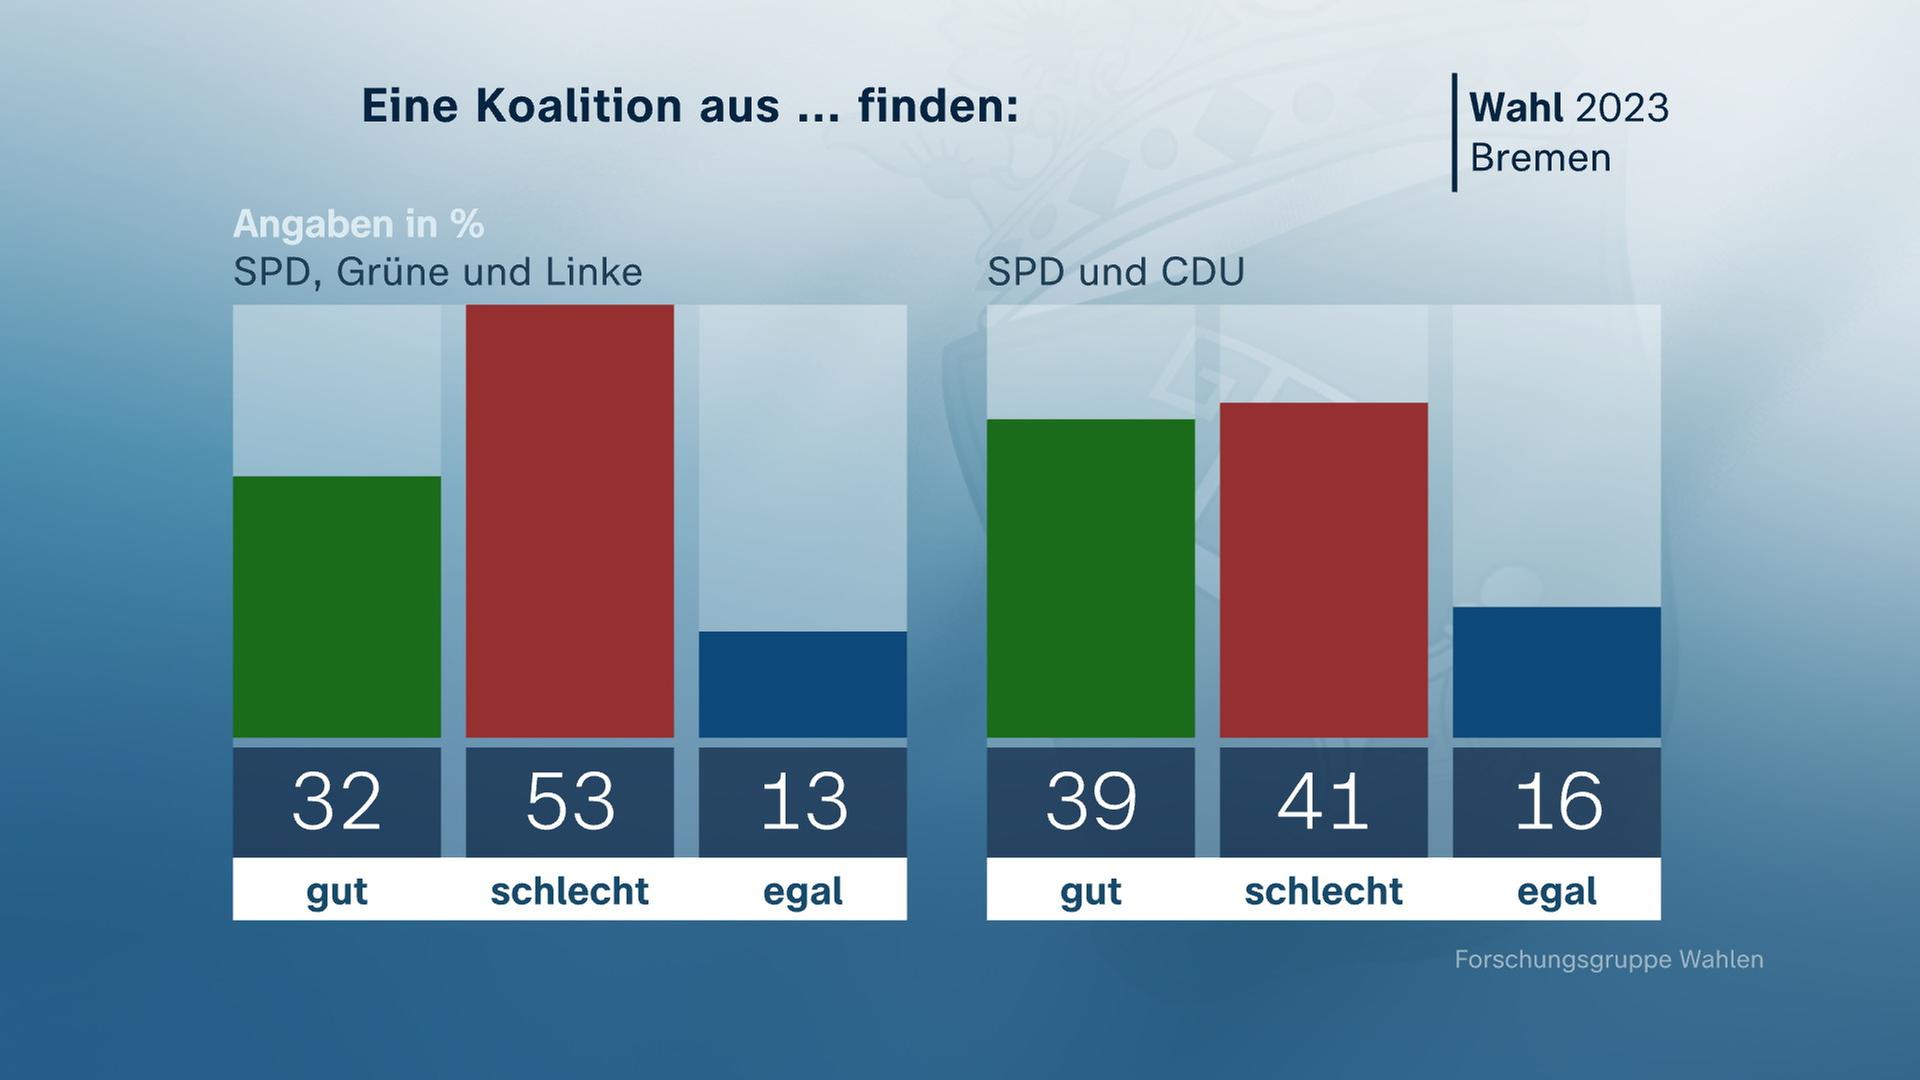 Bremen, Wahl, 2023, Eine Koalition aus ... finden: